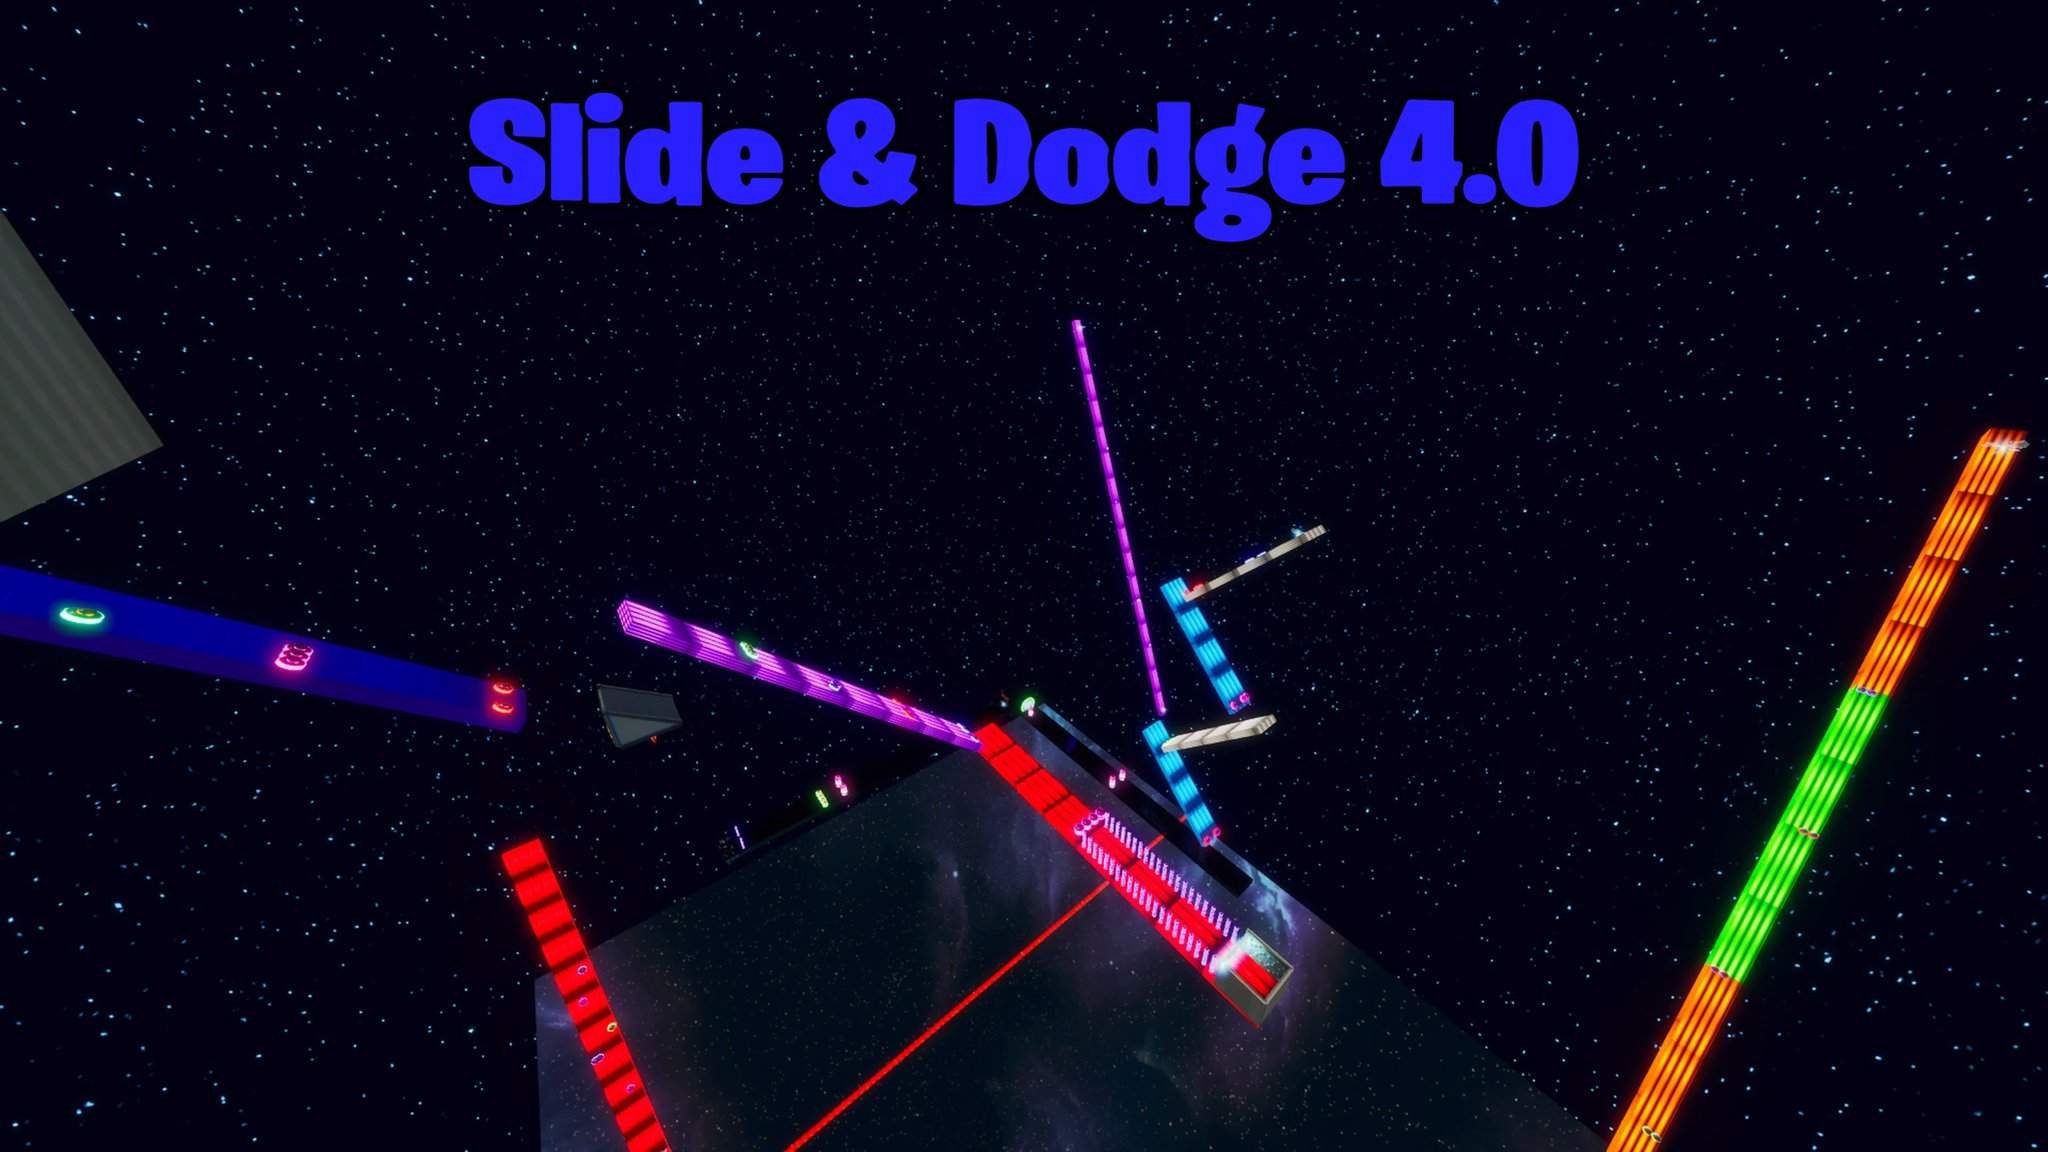 SLIDE & DODGE 4.0